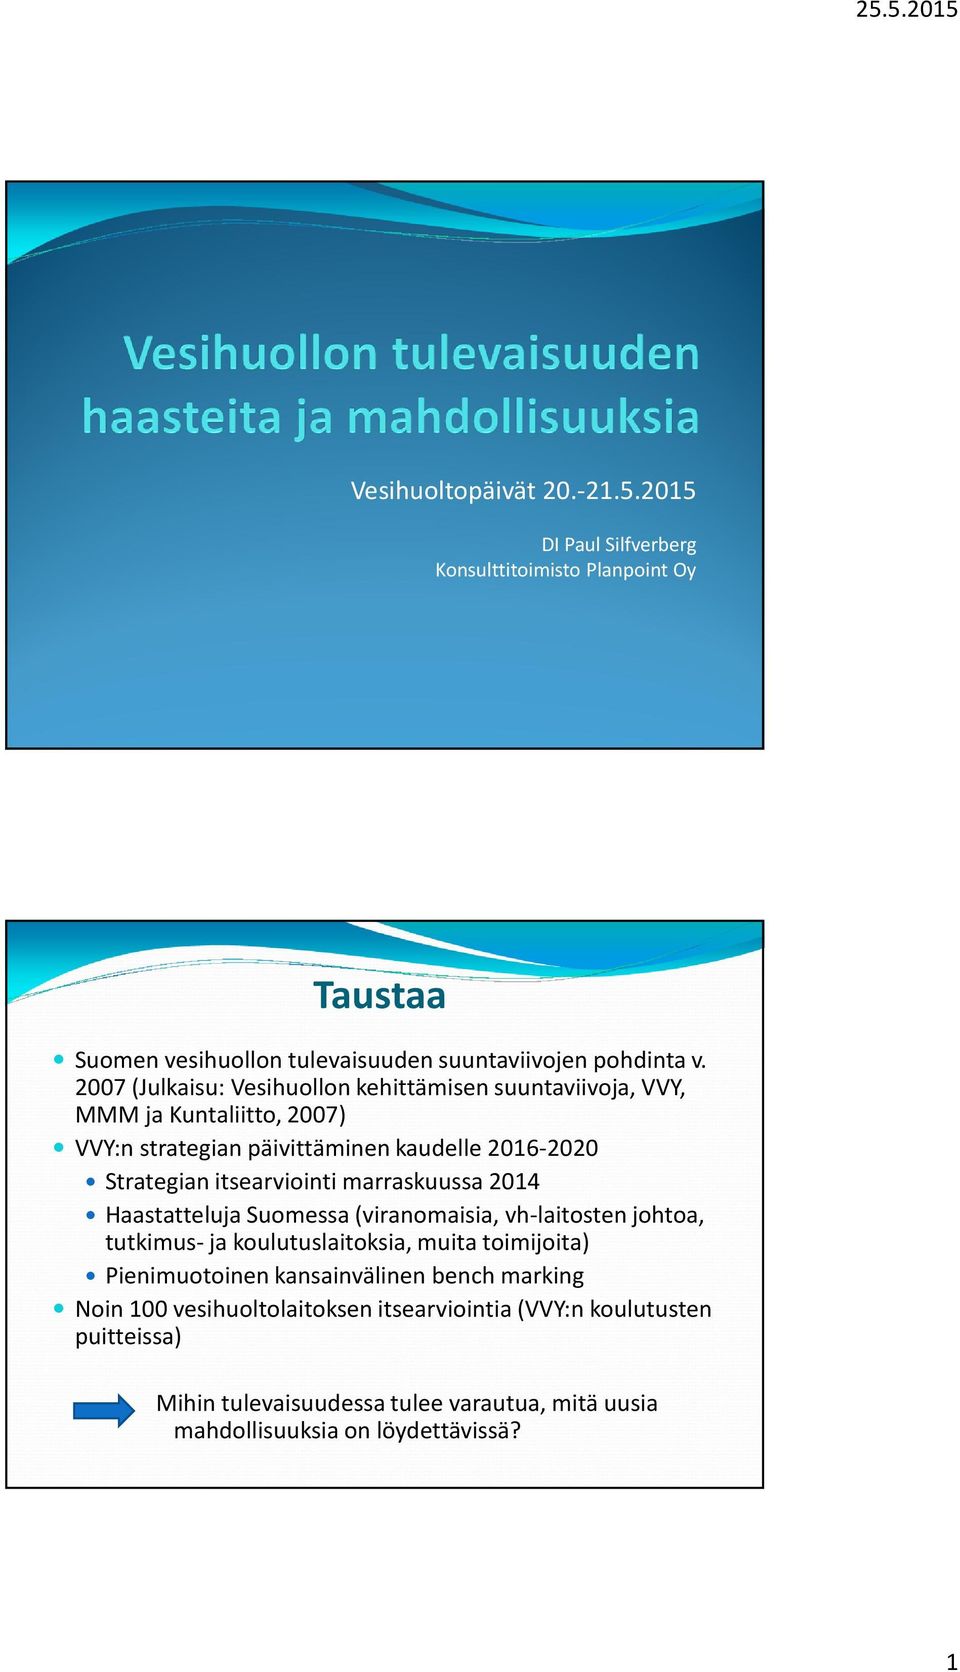 itsearviointi marraskuussa 2014 Haastatteluja Suomessa (viranomaisia, vh-laitostenjohtoa, tutkimus- ja koulutuslaitoksia, muita toimijoita) Pienimuotoinen